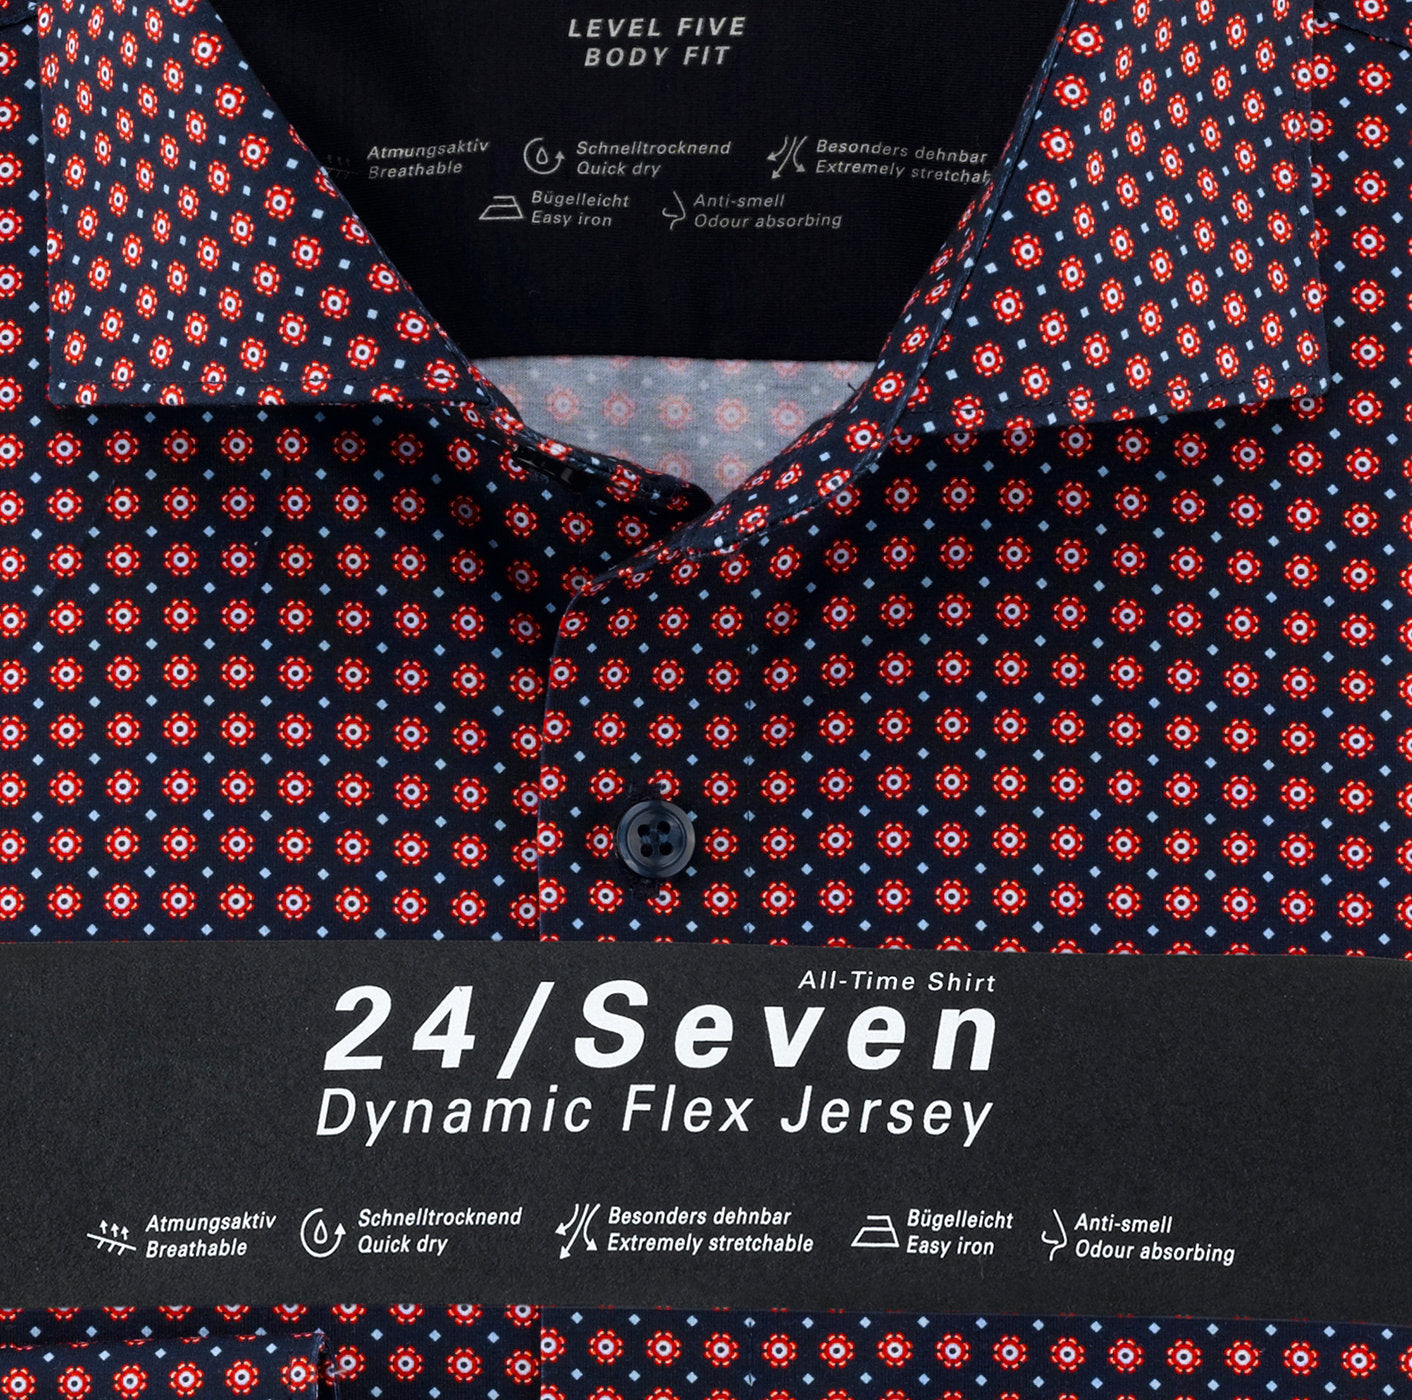 Chemise à motifs imprimés - Body fit - 24/Seven - Business